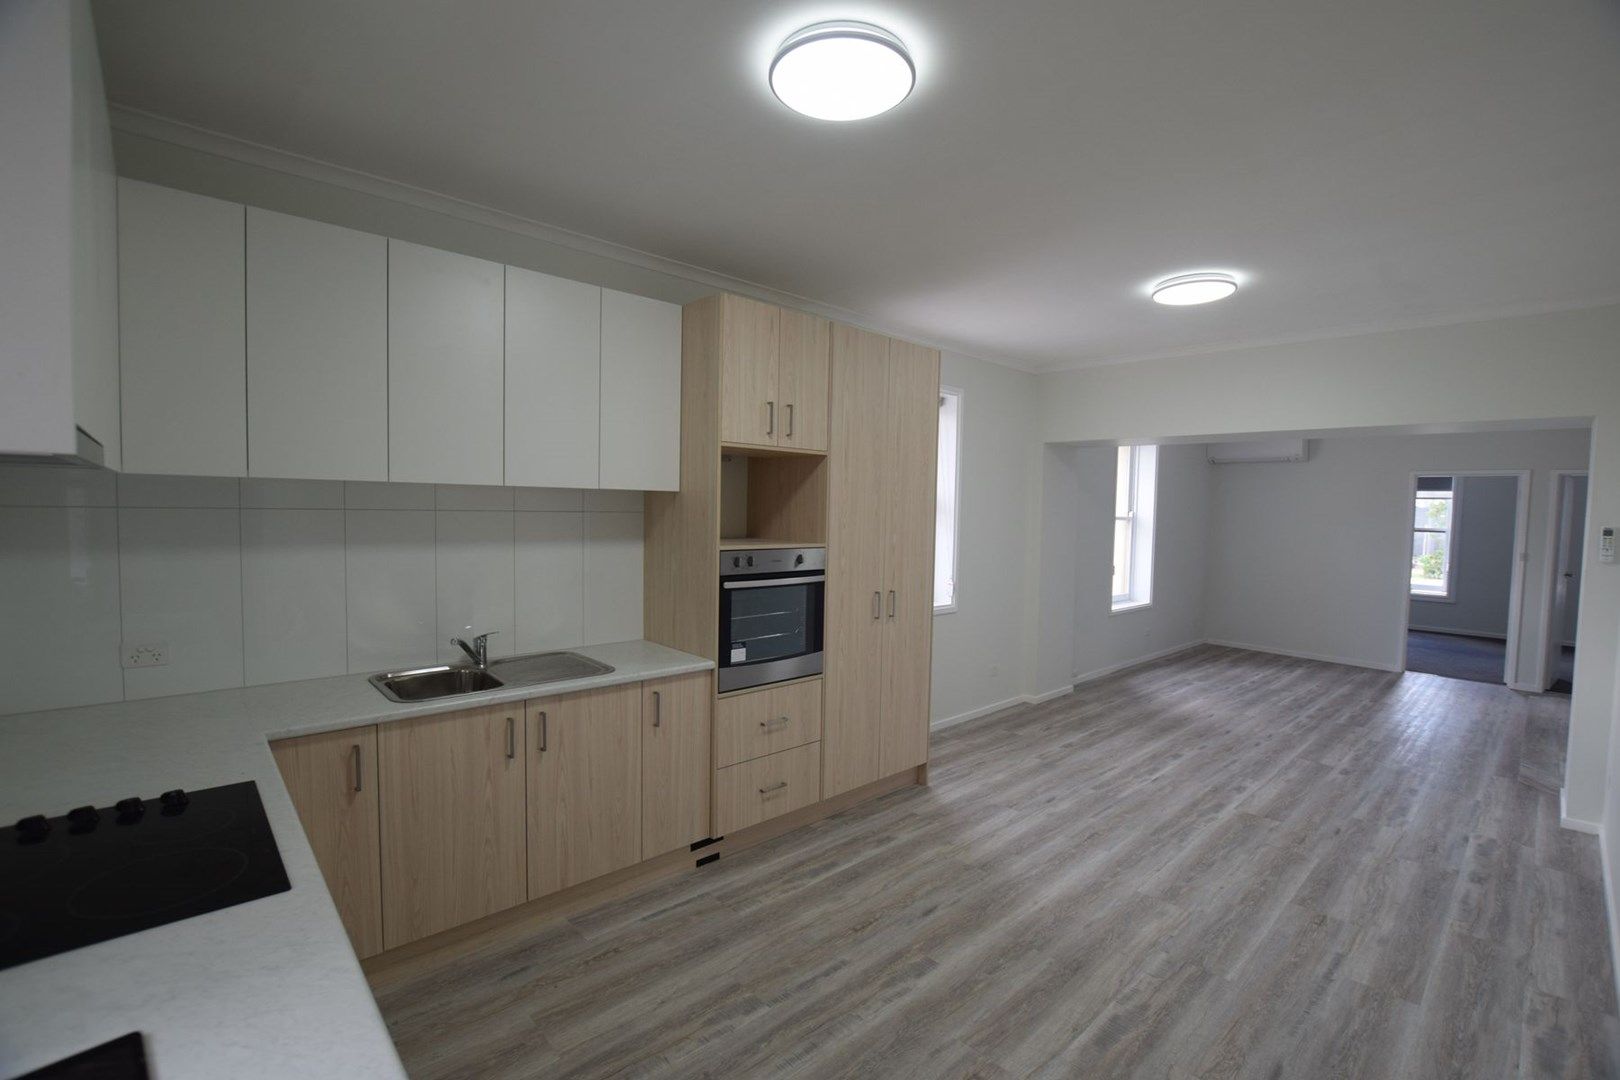 1 bedrooms Apartment / Unit / Flat in 56 Liebig Street WARRNAMBOOL VIC, 3280